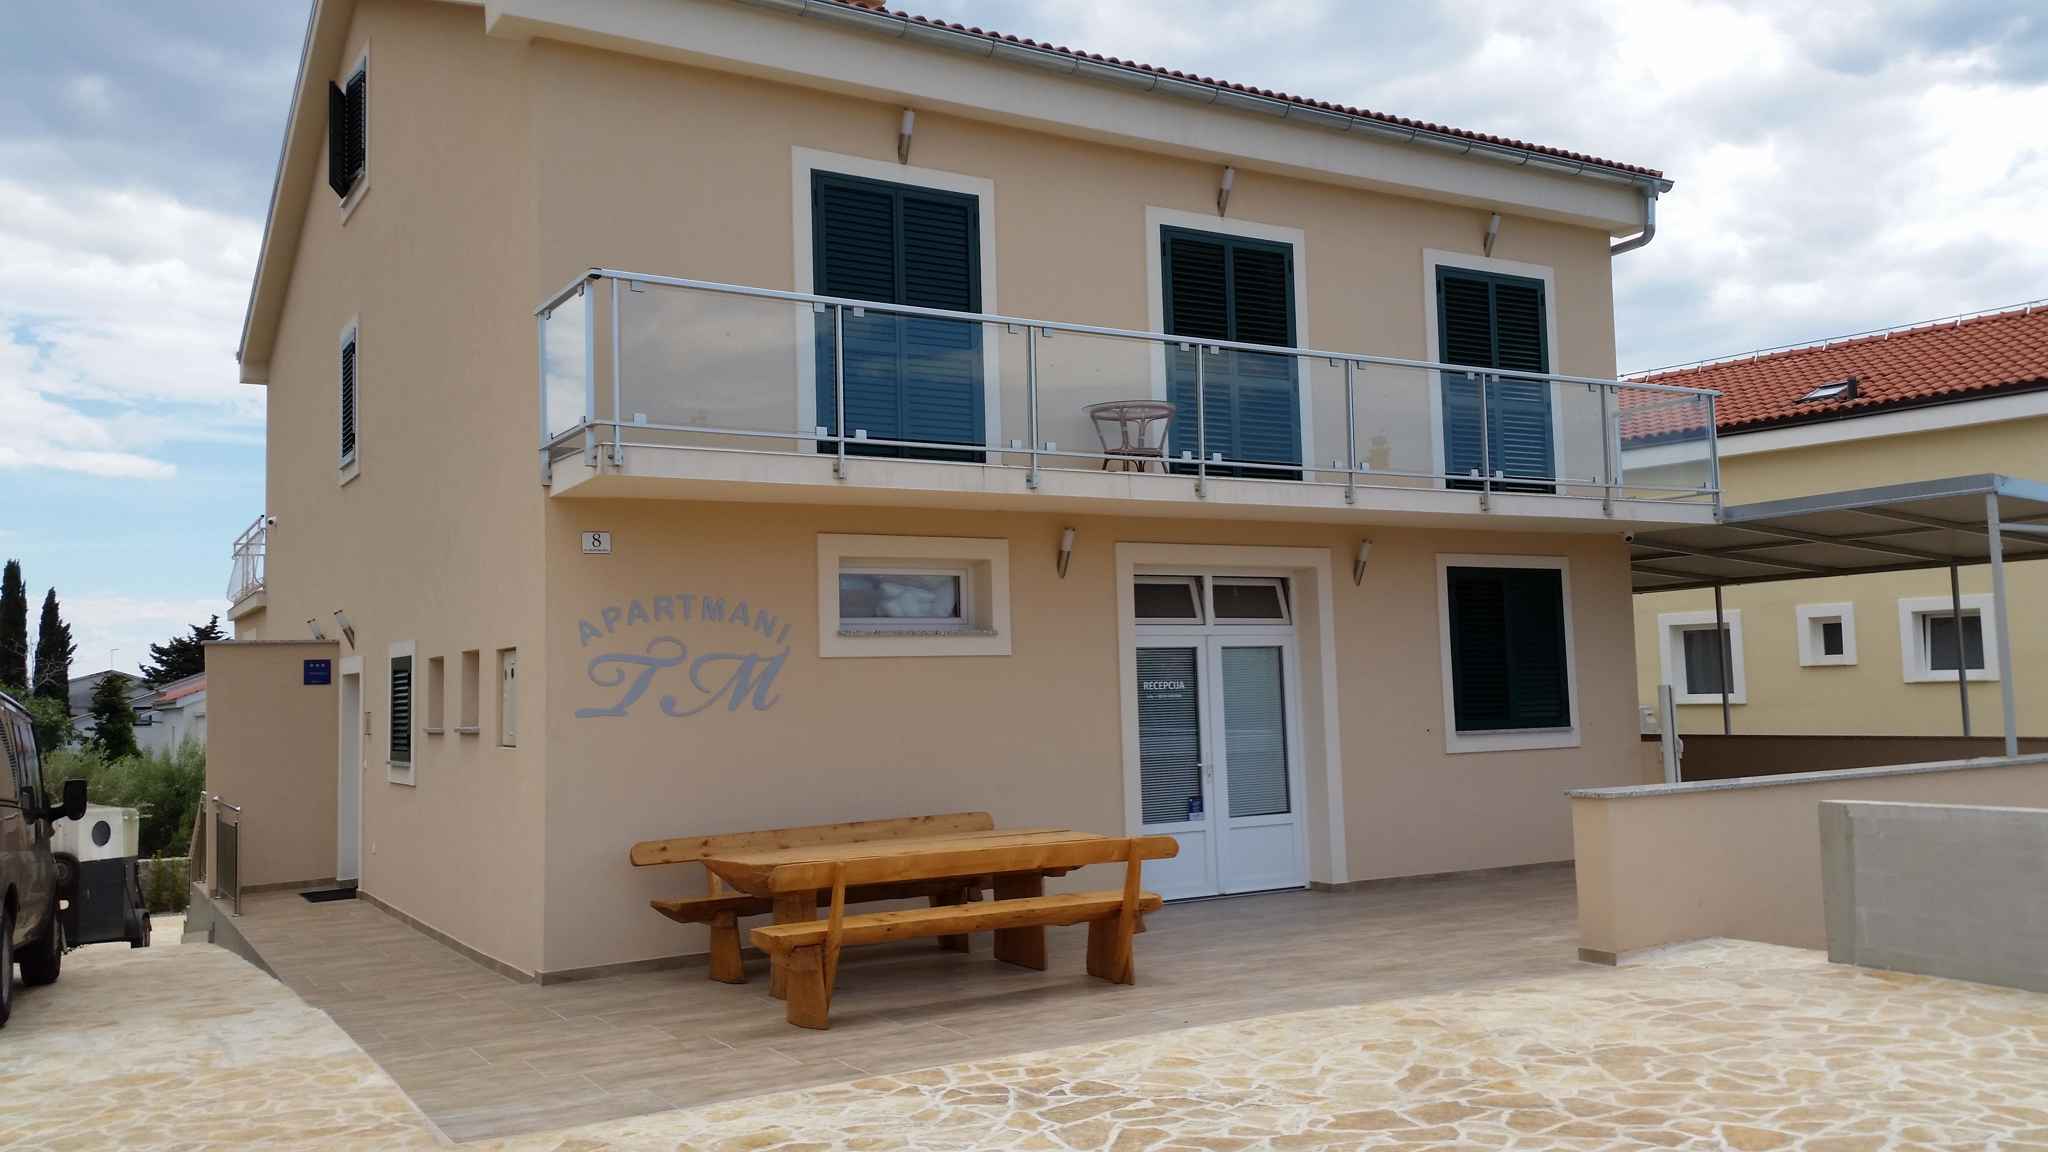 Ferienwohnung mit Pool Nutzung Ferienhaus in Kroatien